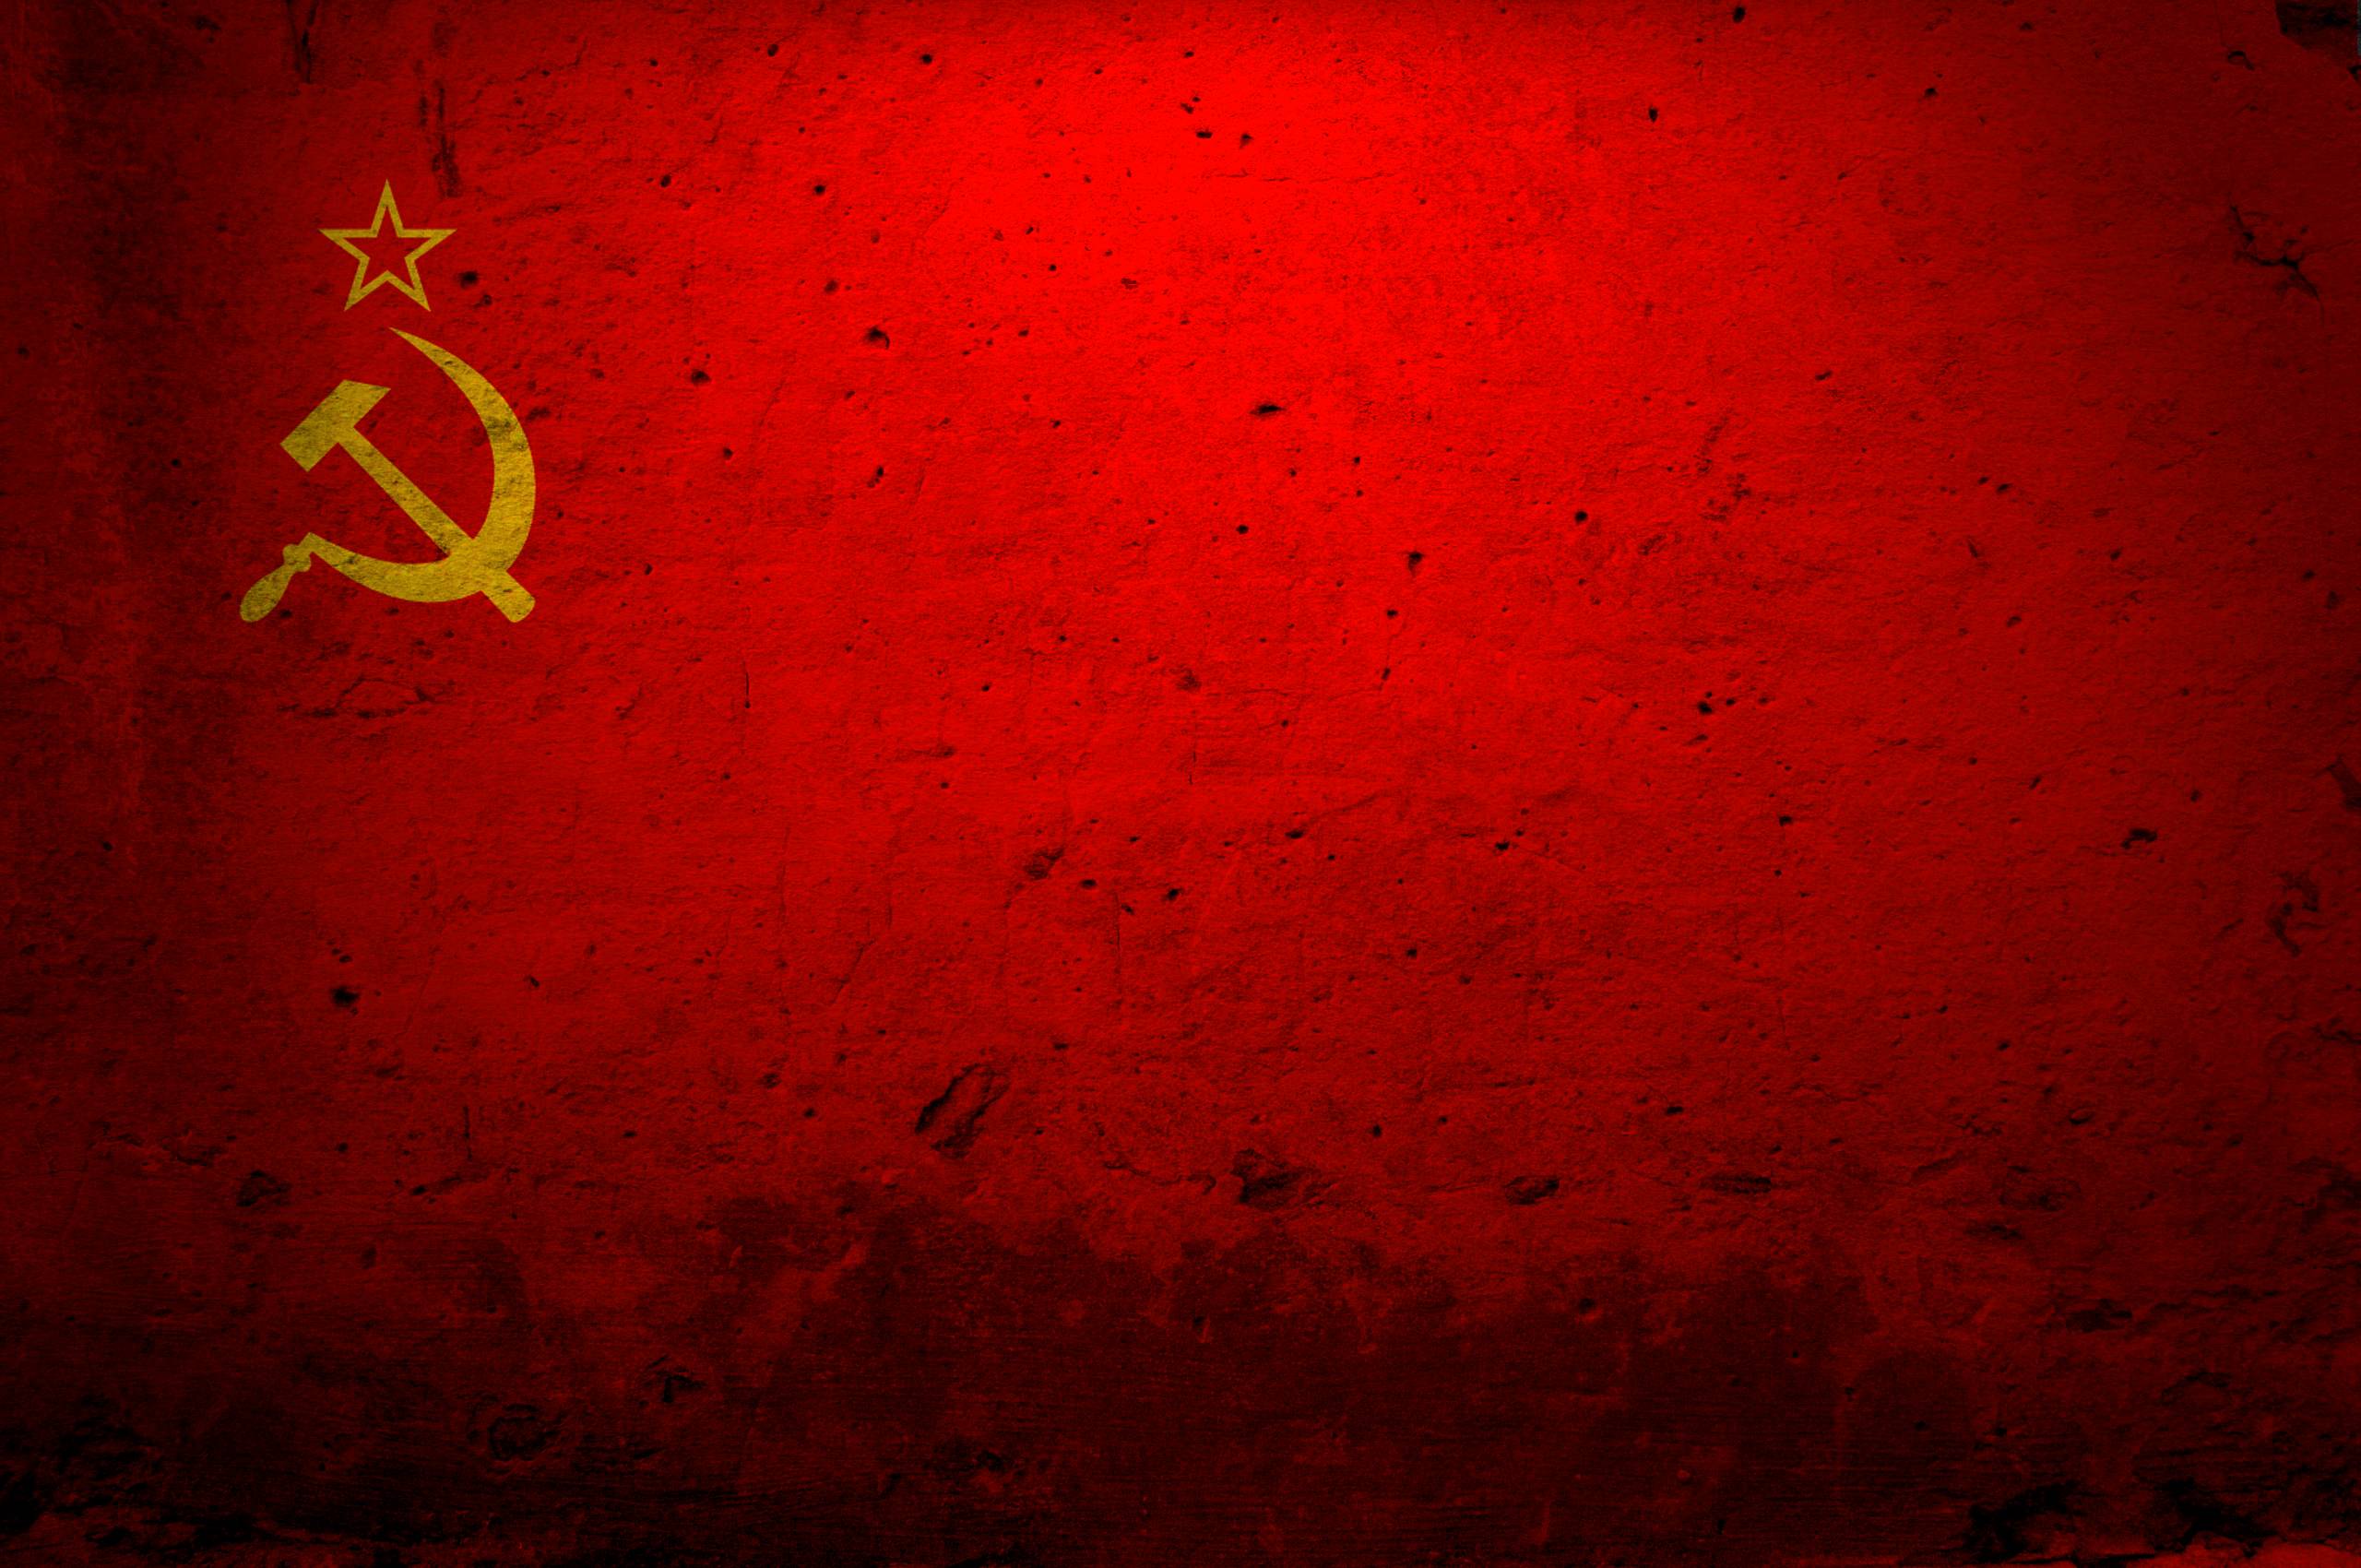 Desktop Wallpaper Communist Russia 600 X 422 183 Kb Jpeg